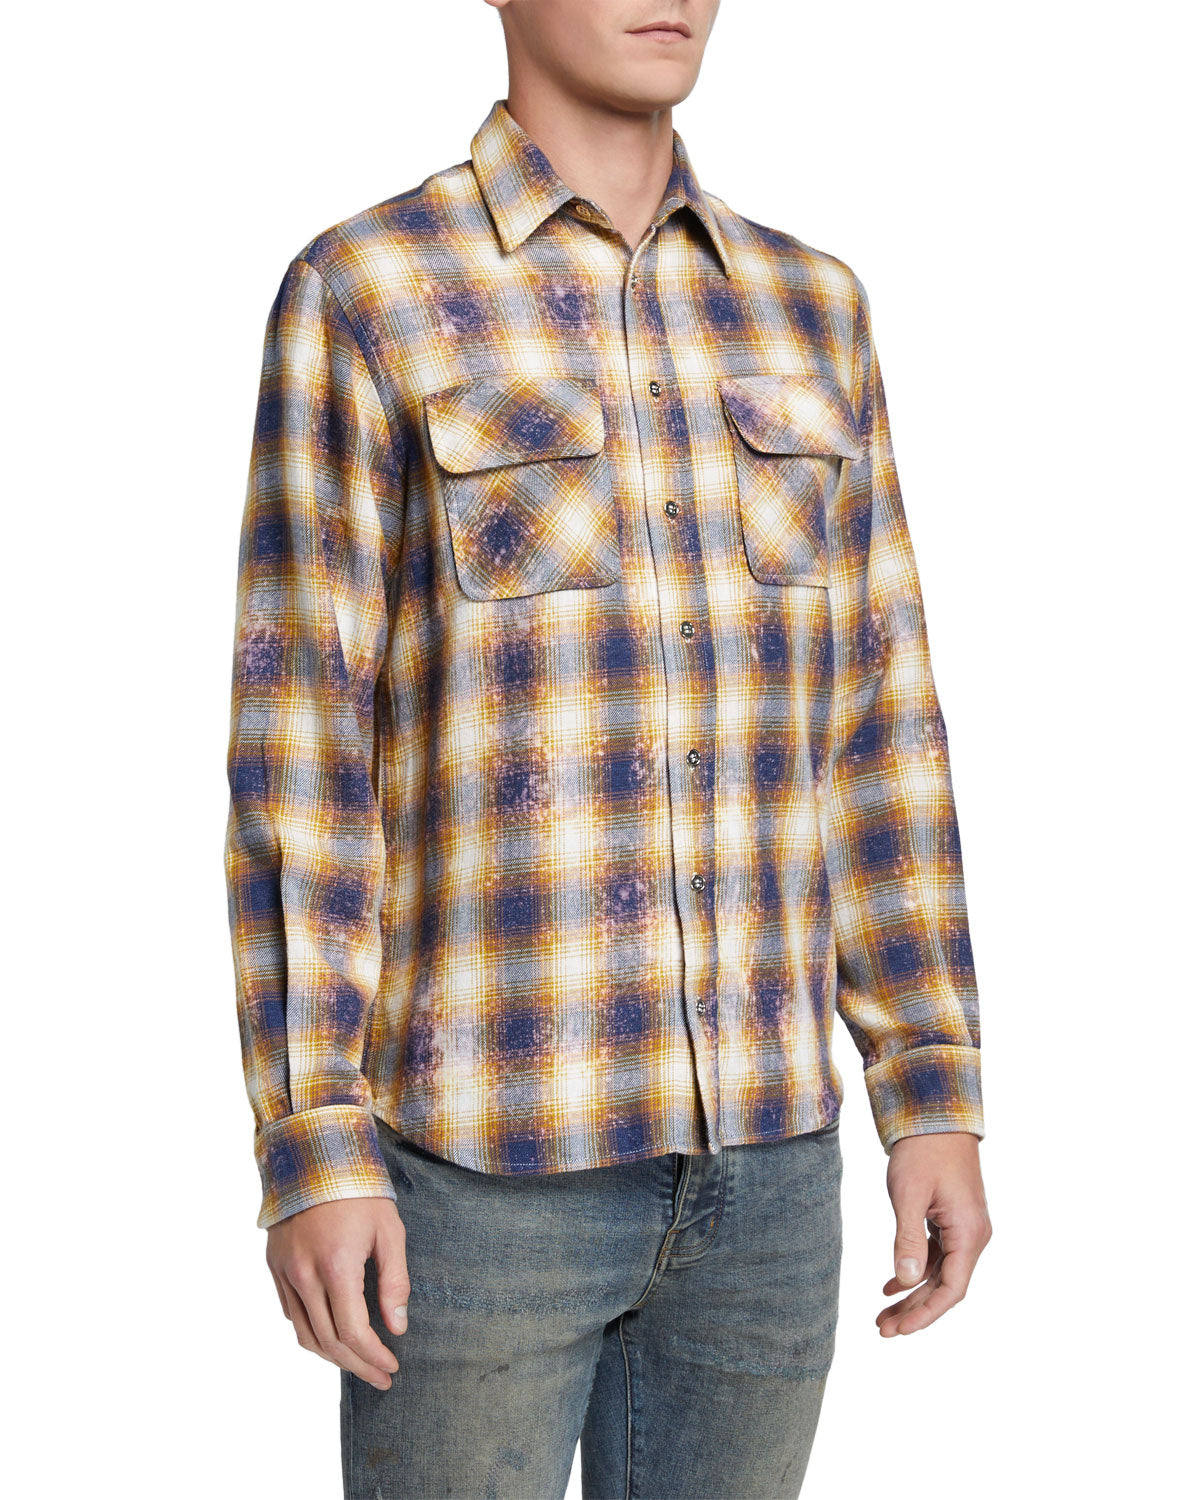 PURPLE Men's Flannel Sport Shirt yellow pattern